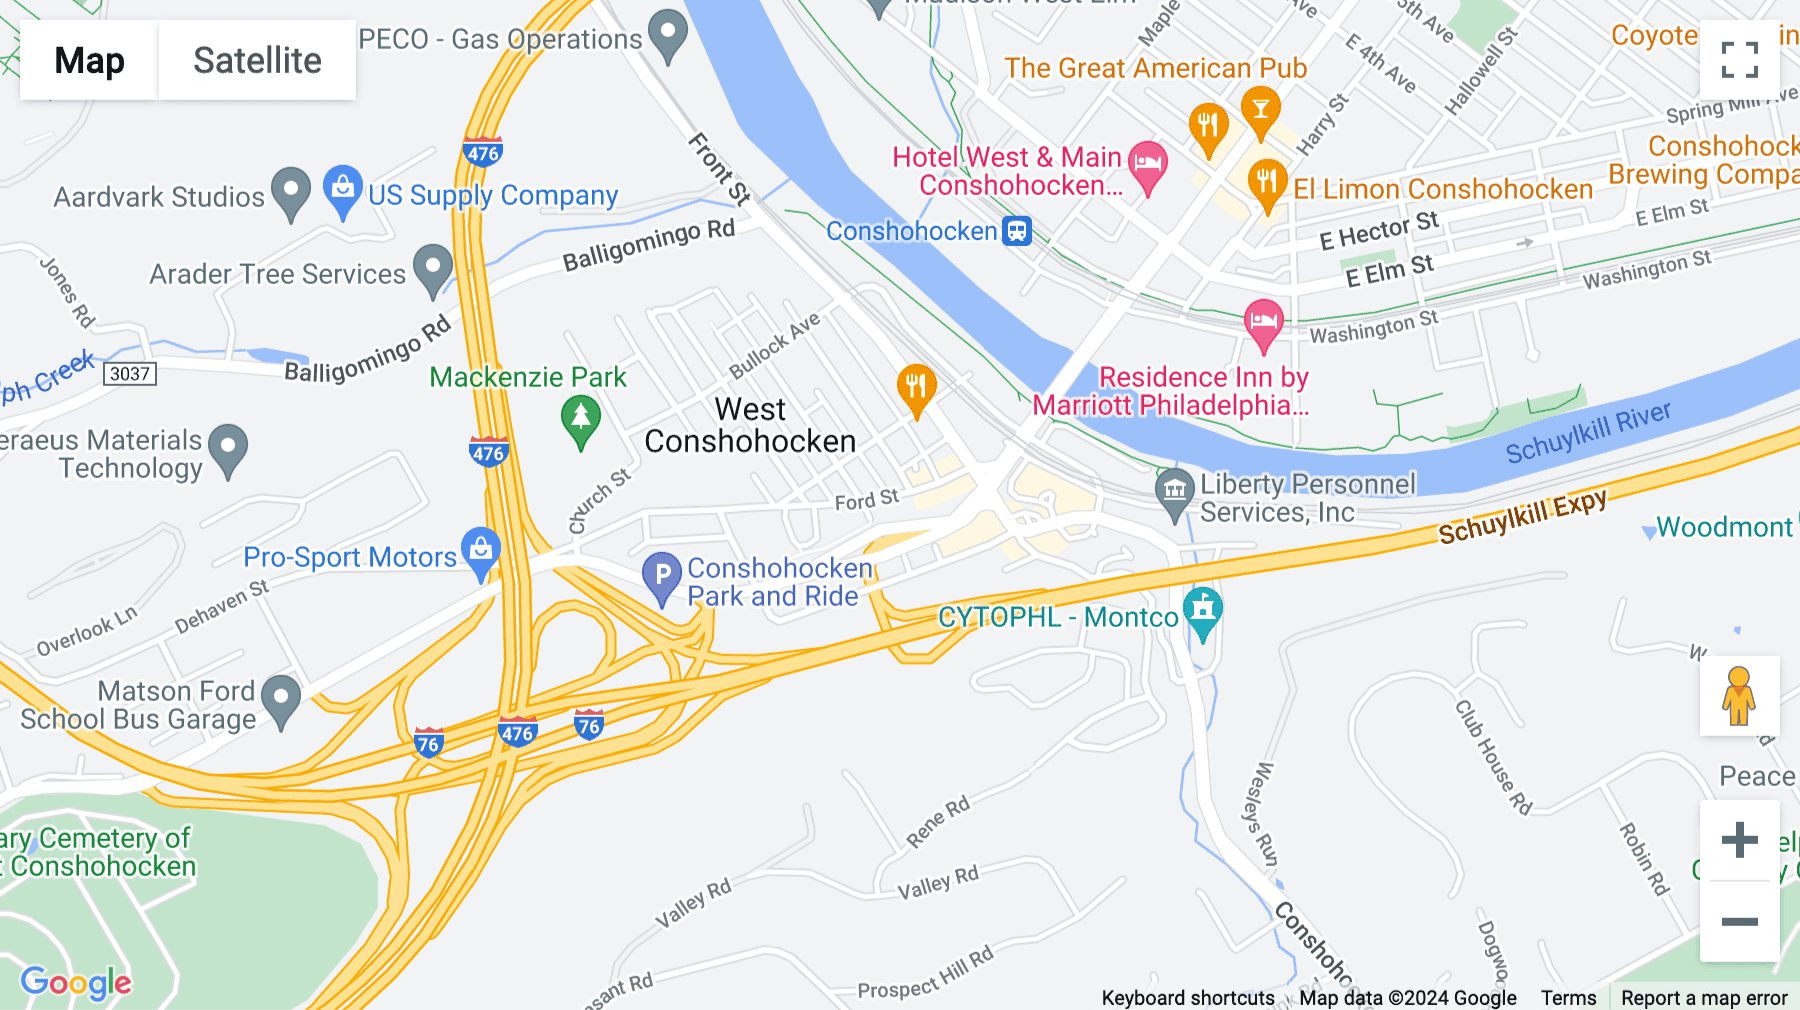 Click for interative map of 200 Barr Harbor Drive, Four Tower Bridge, Suite 400, Tower Bridge Centre, West Conshohocken, West Conshohocken